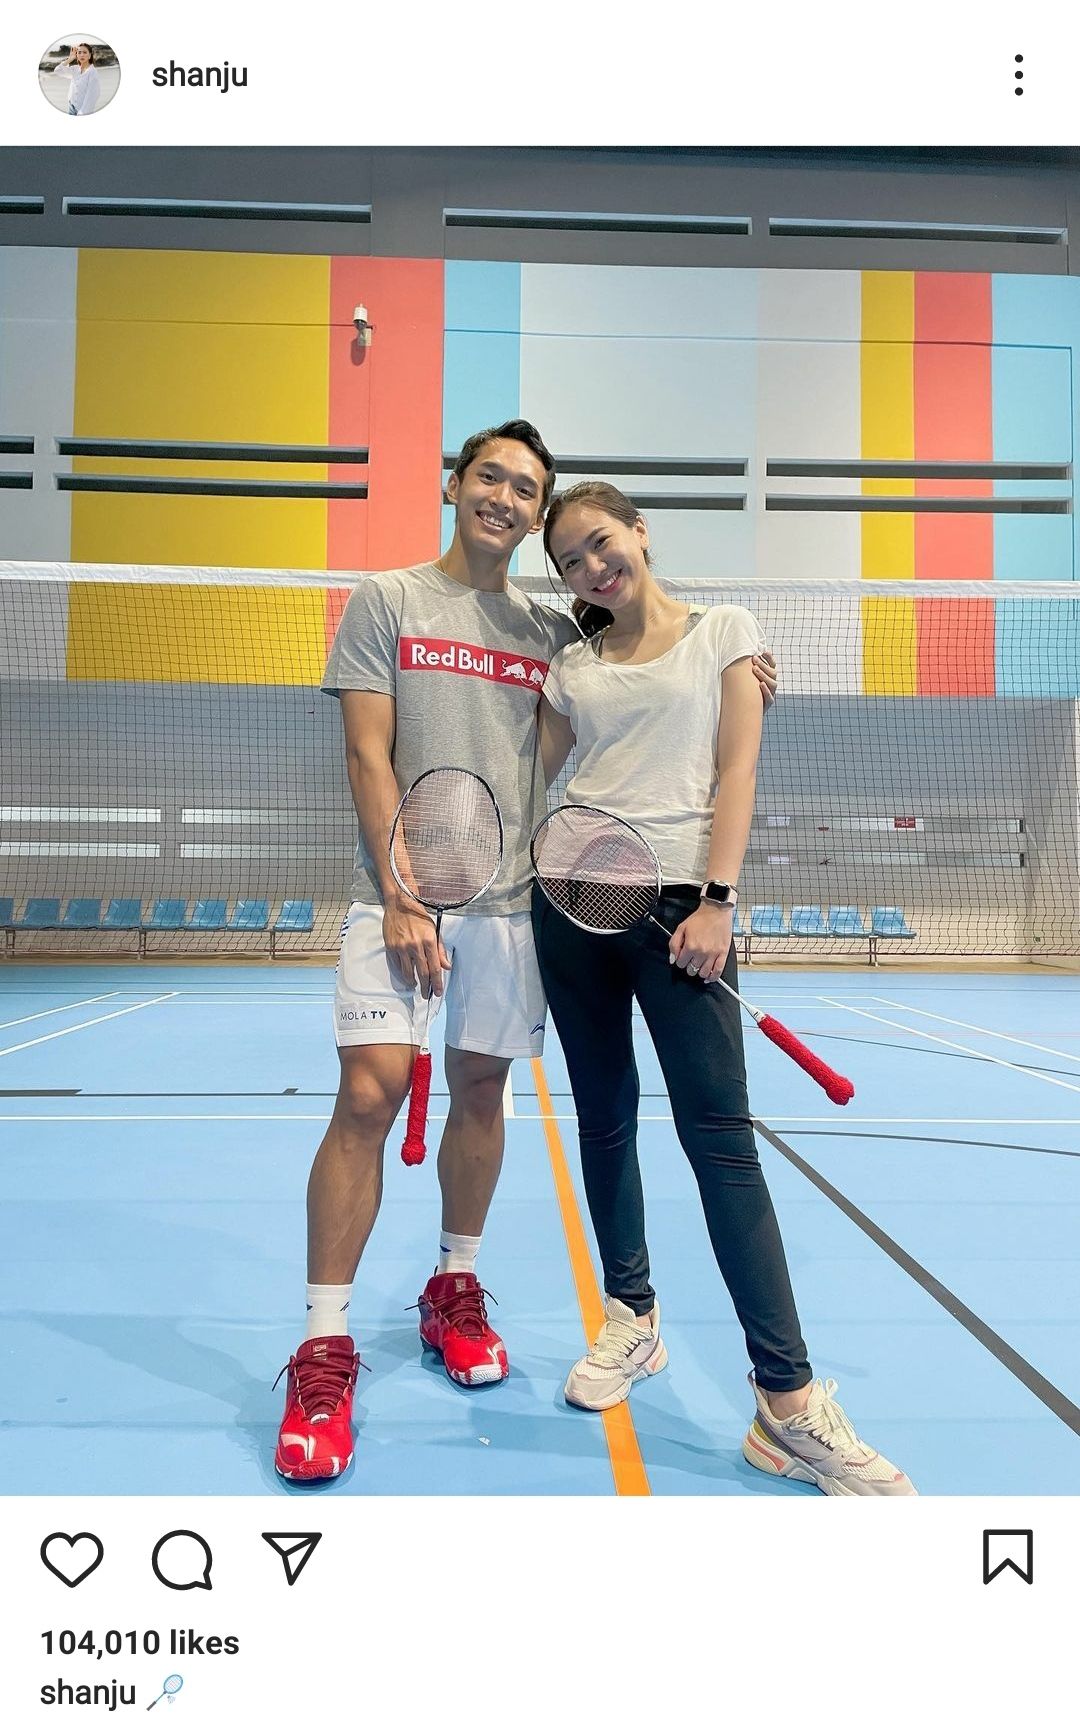 Foto Jonatan Christie dan Shanju saat latihan badminton bersama. 